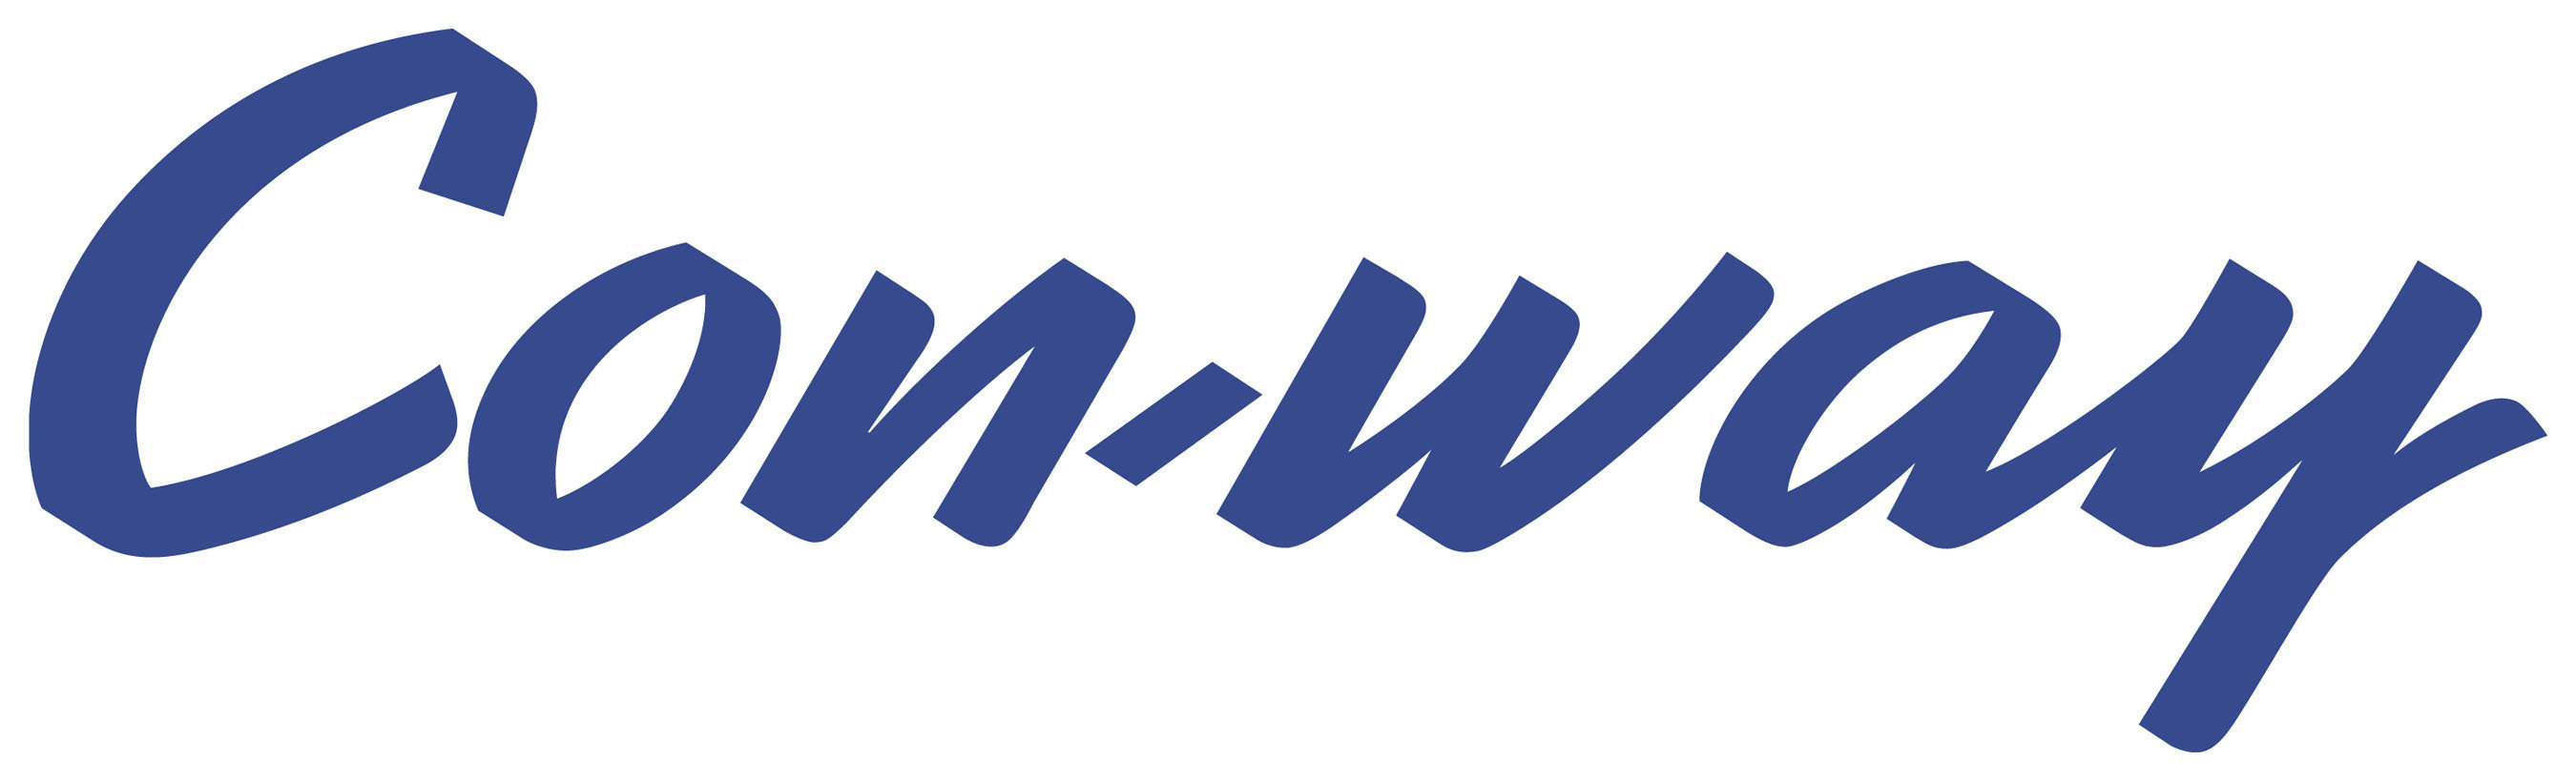 Con-way Inc. logo